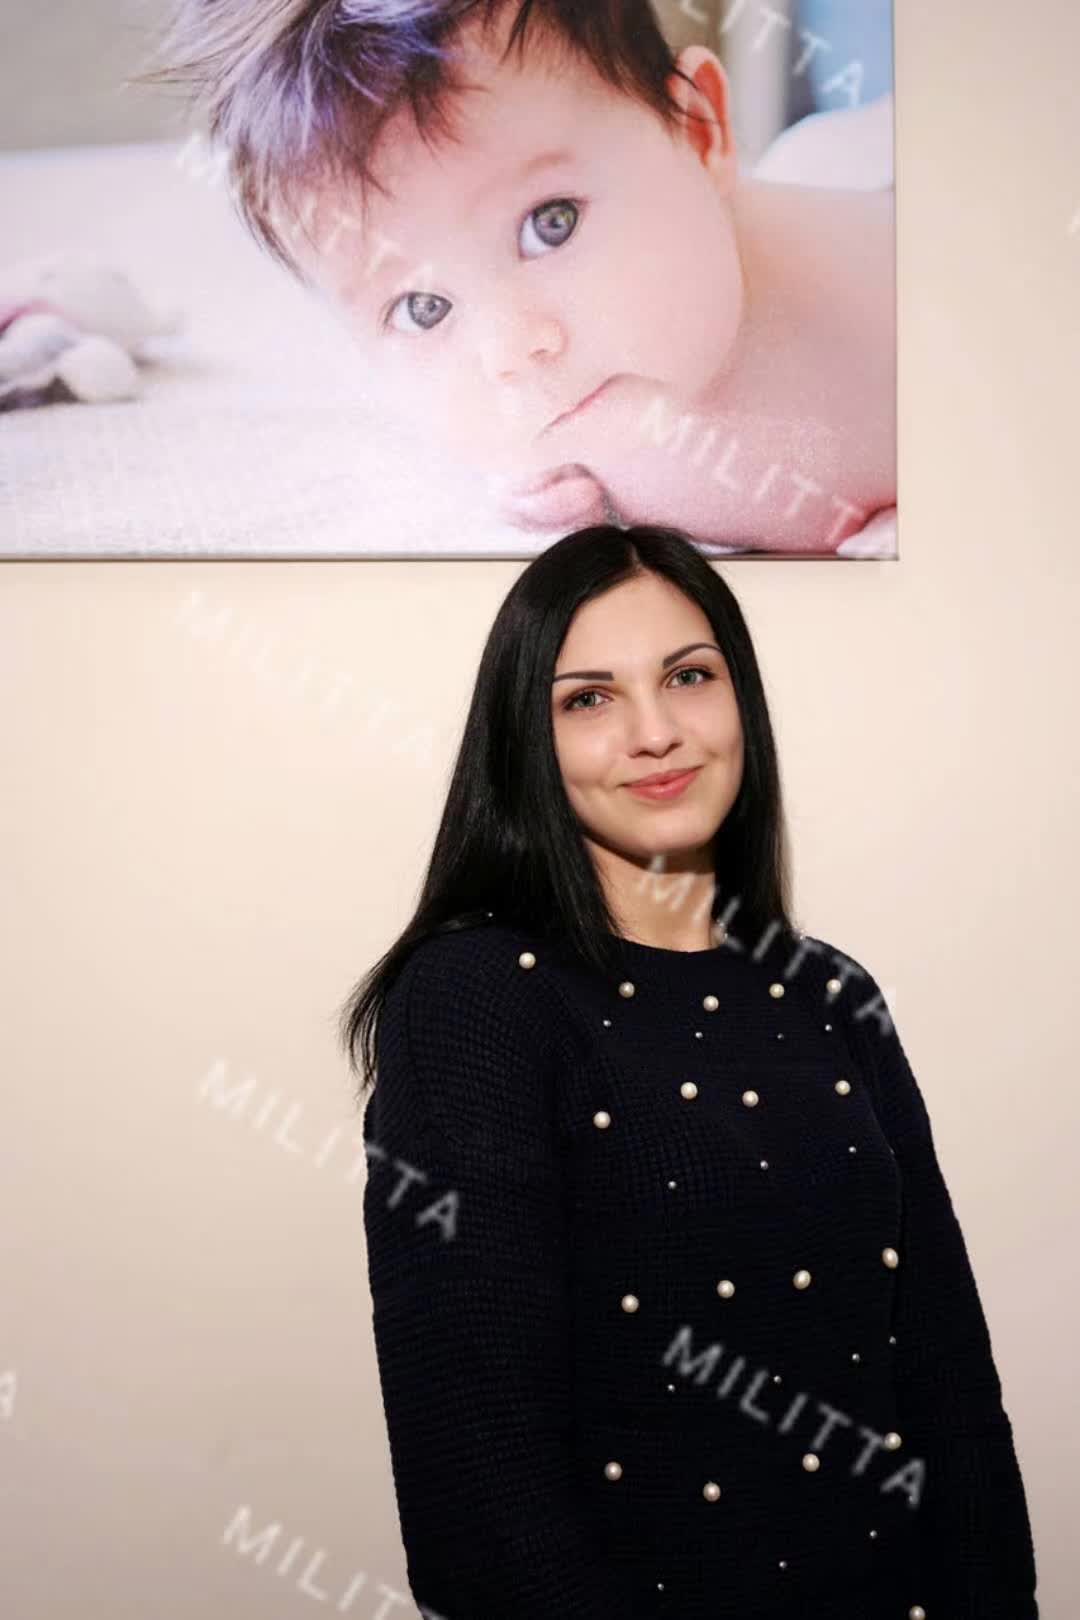 乌克兰的捐卵者 棕黑色头发白皮肤 O型血，171cm高挑身材